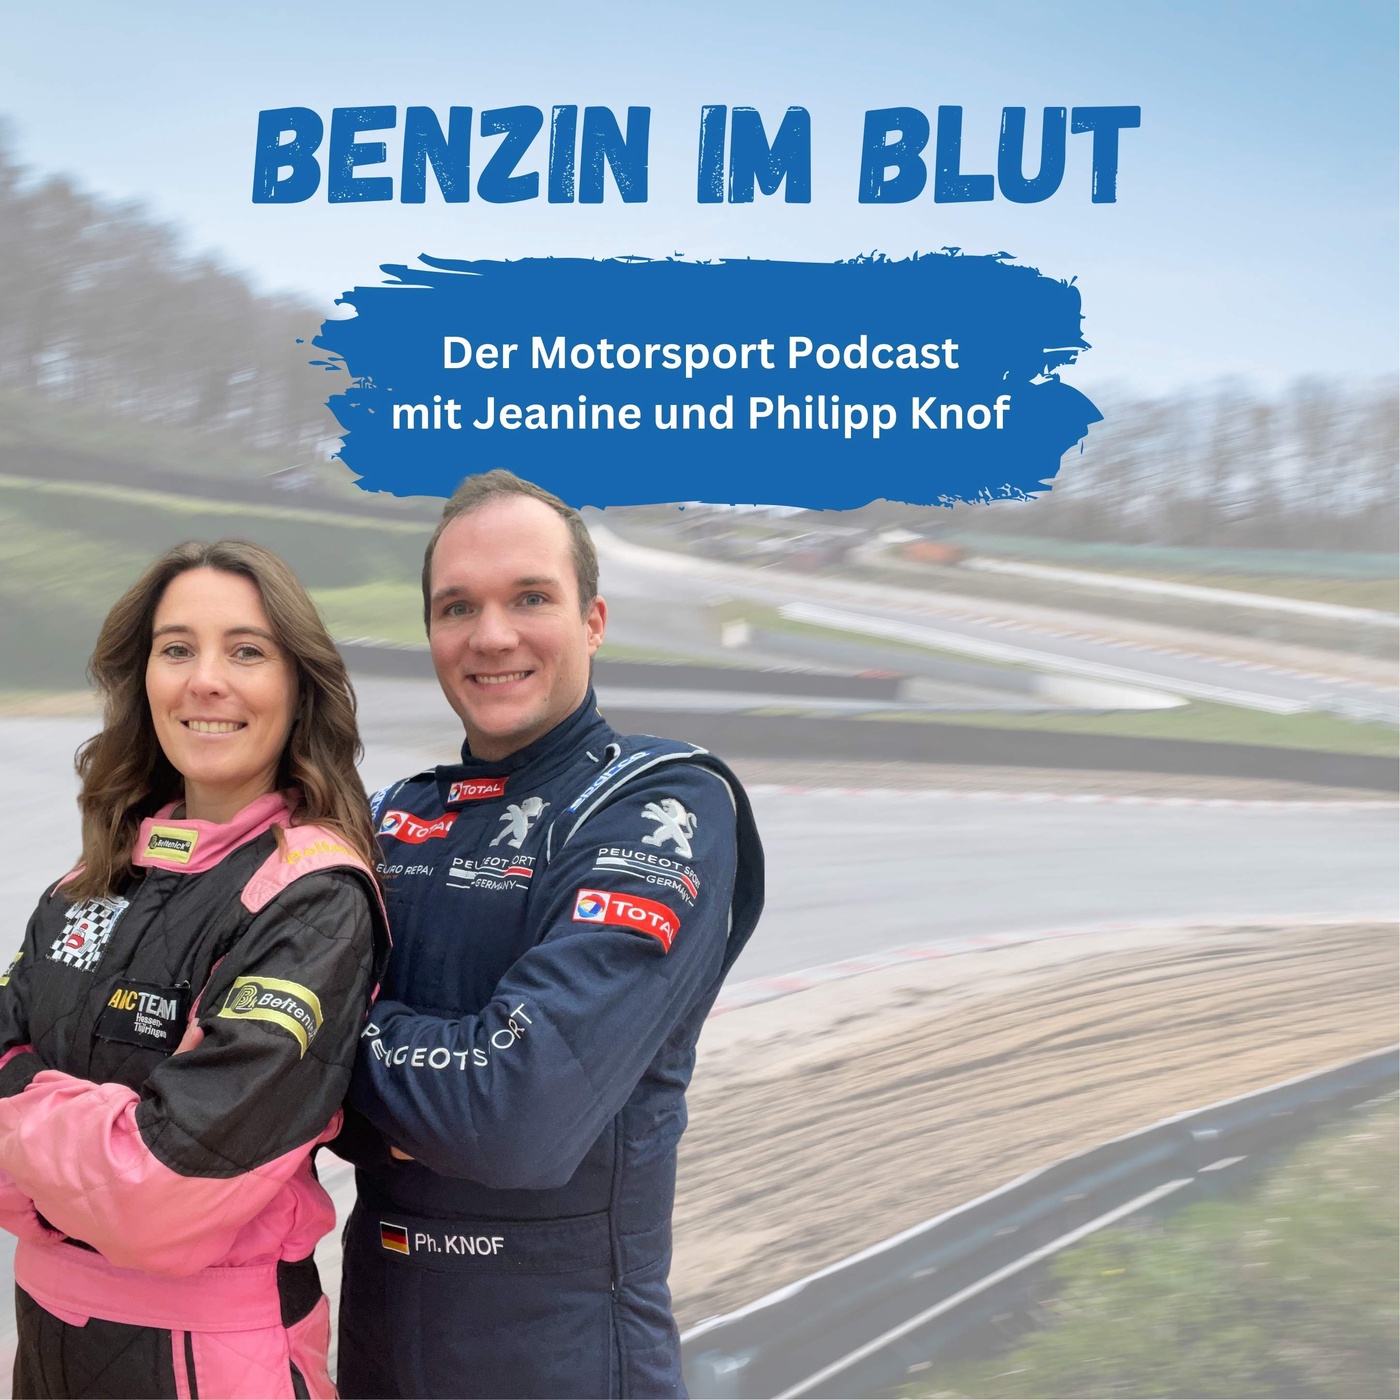 Benzin im Blut - Der Motorsport Podcast